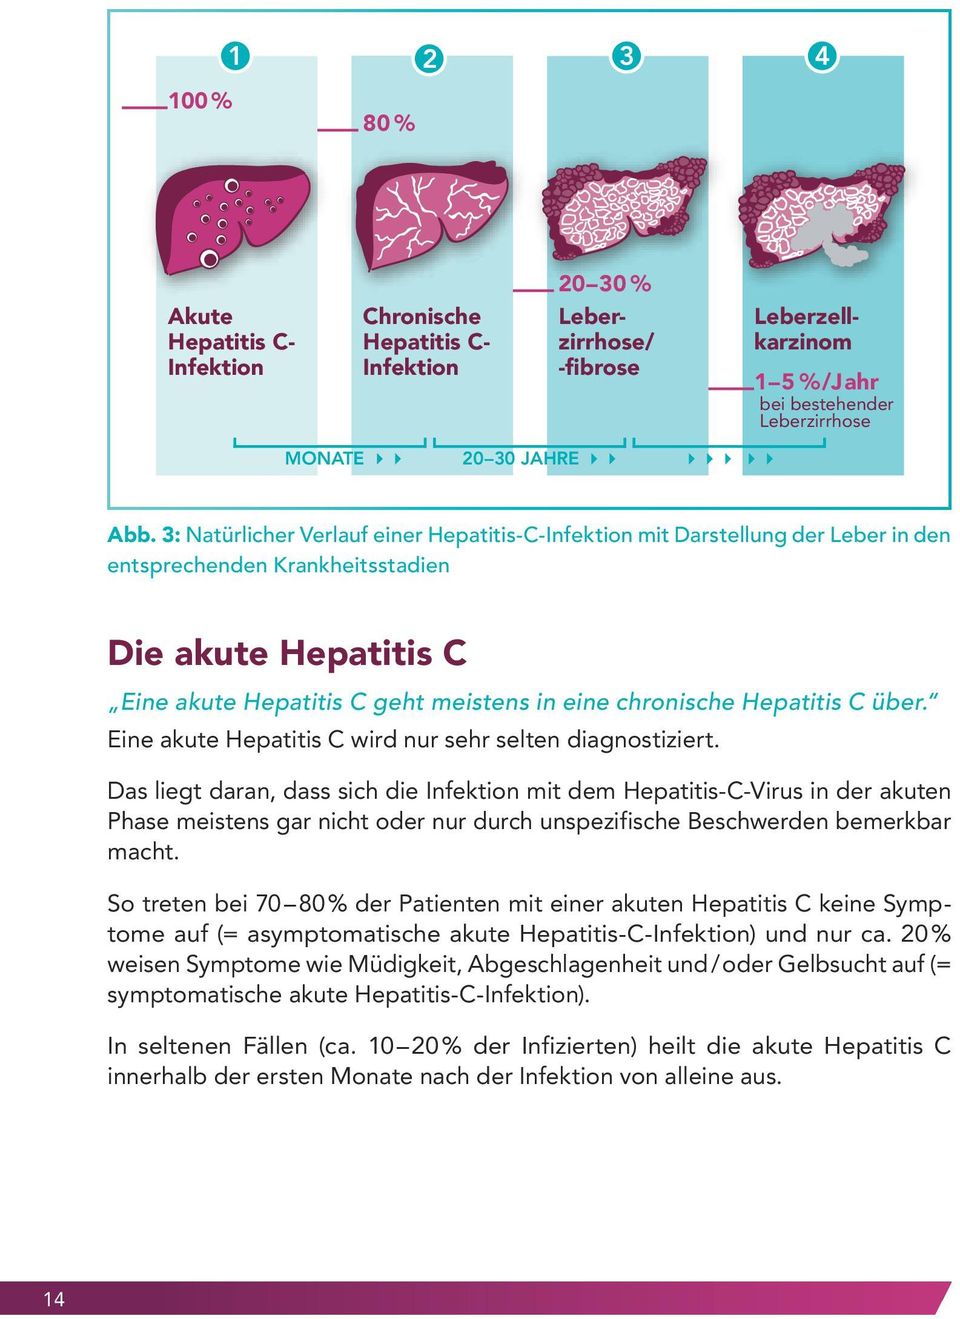 Hepatitis C über. Eine akute Hepatitis C wird nur sehr selten diagnostiziert.